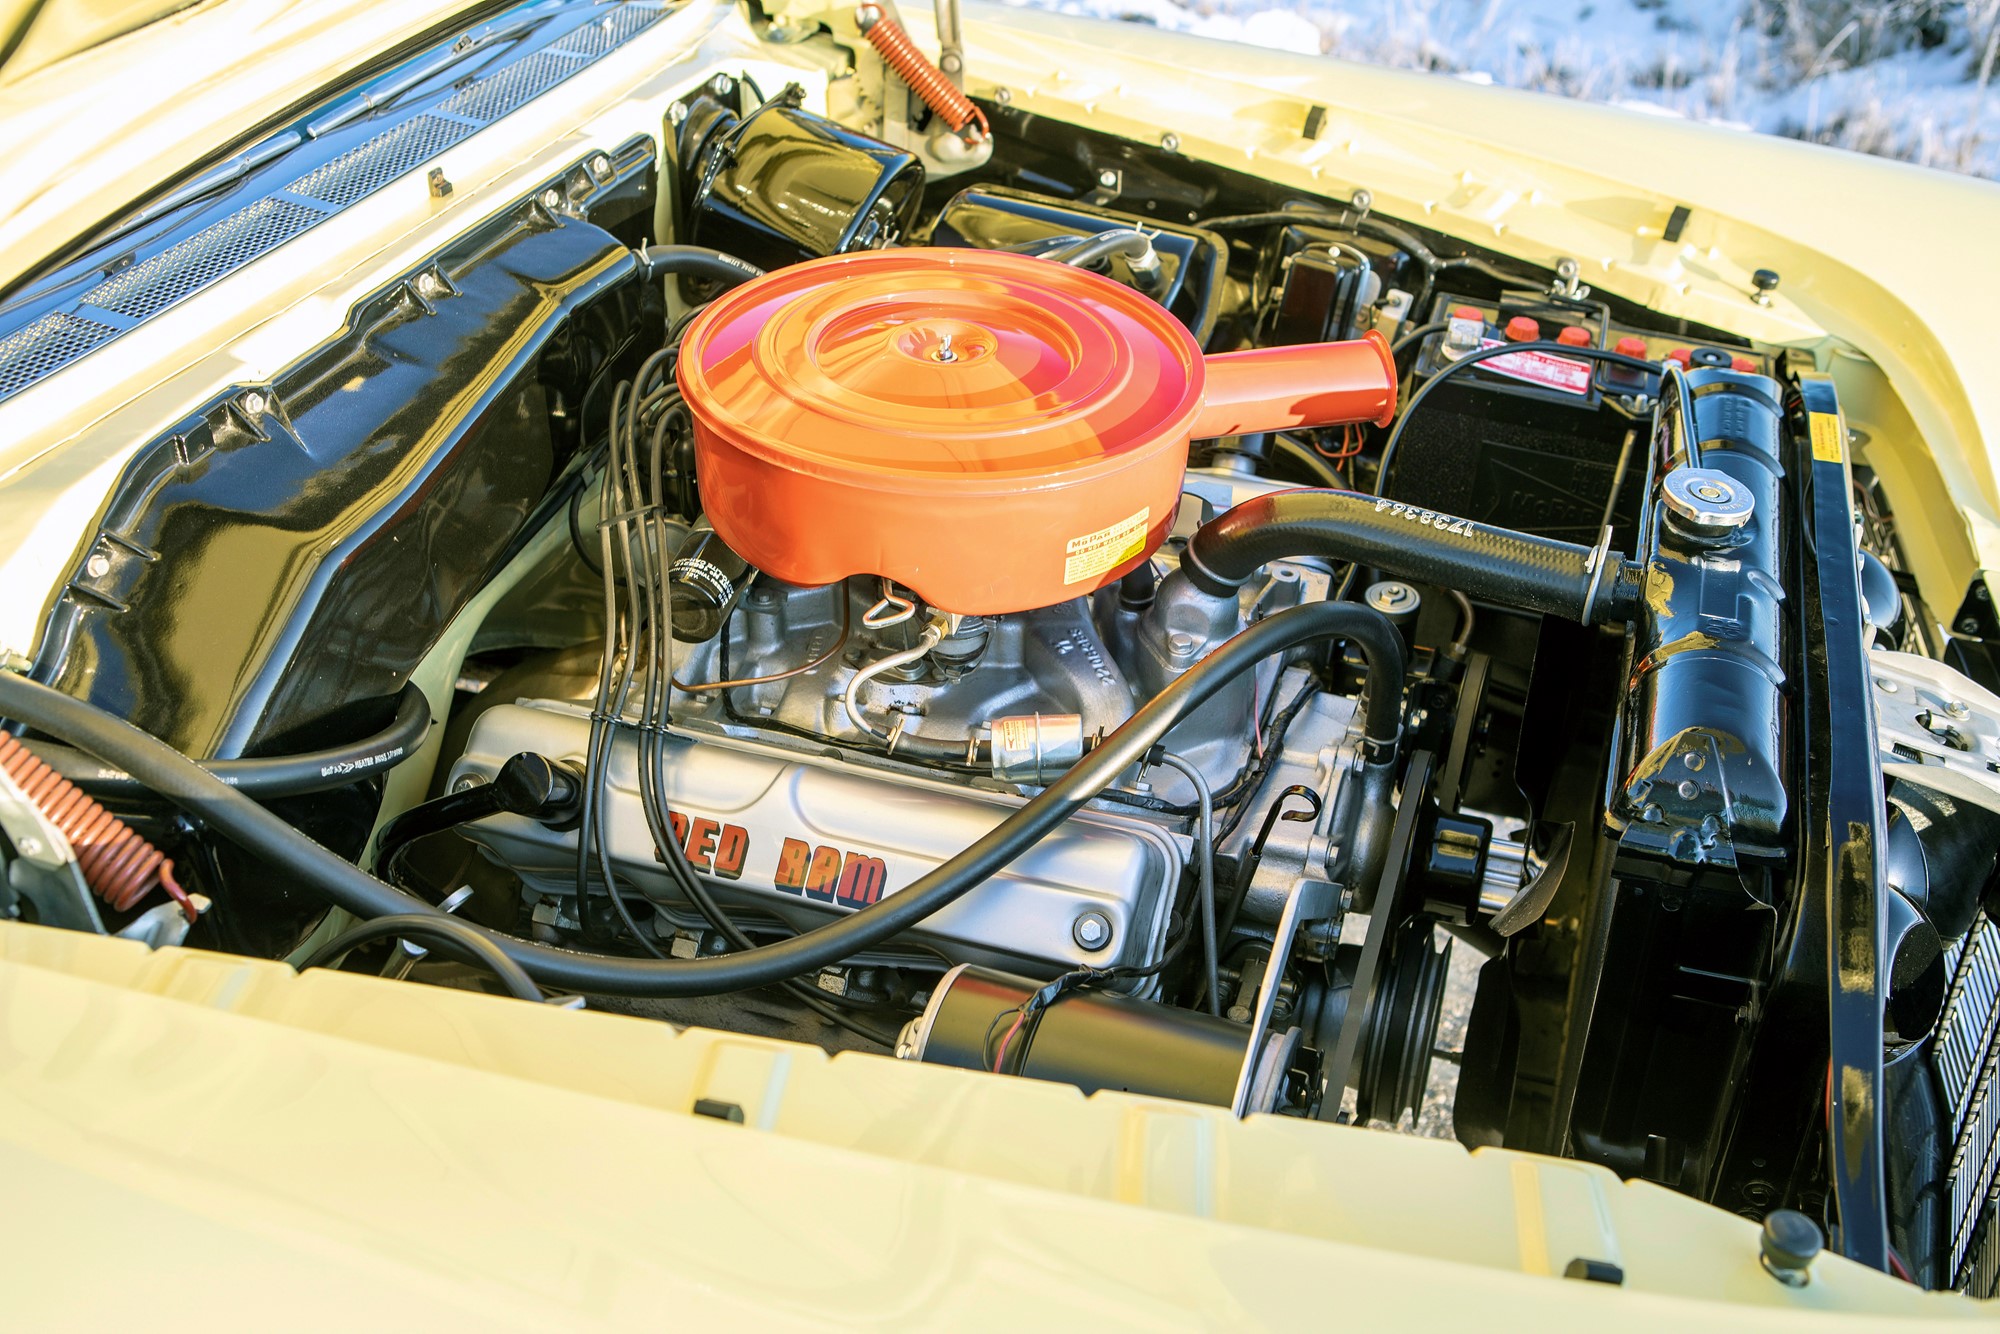 Red Ram kom som motornamn redan 1953. Detta är den ovanliga 326:an som endast fanns 1959 och var den minsta V8:an som Dodge personbilsavdelning erbjöd det året. 1960 hade den ersatts med den klassiska 318 V8:an.